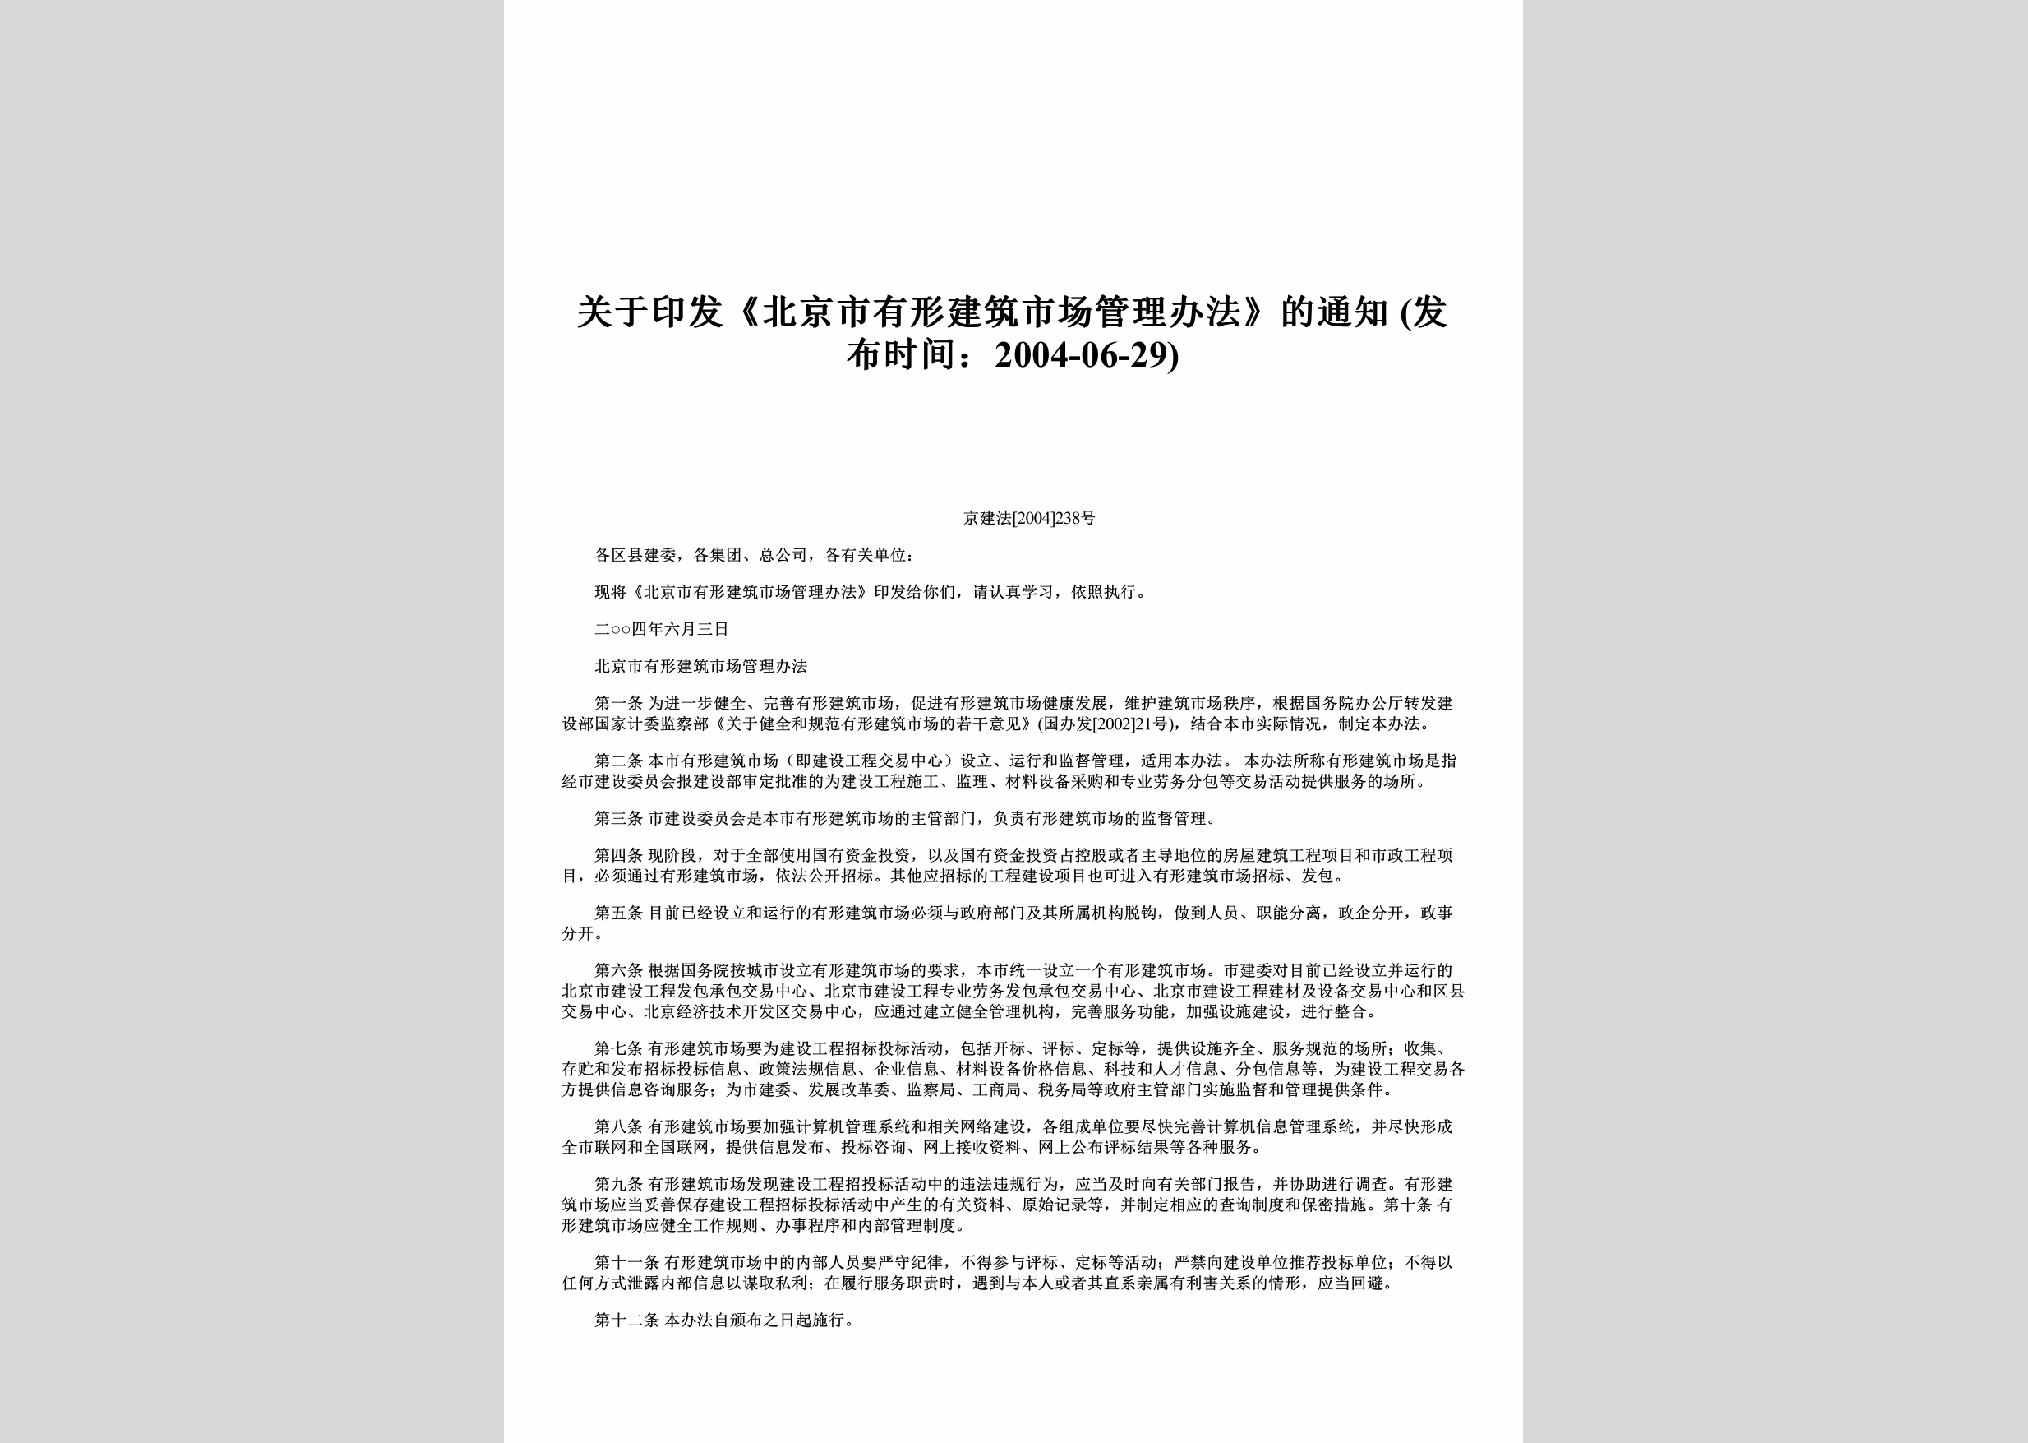 京建法[2004]238号：关于印发《北京市有形建筑市场管理办法》的通知